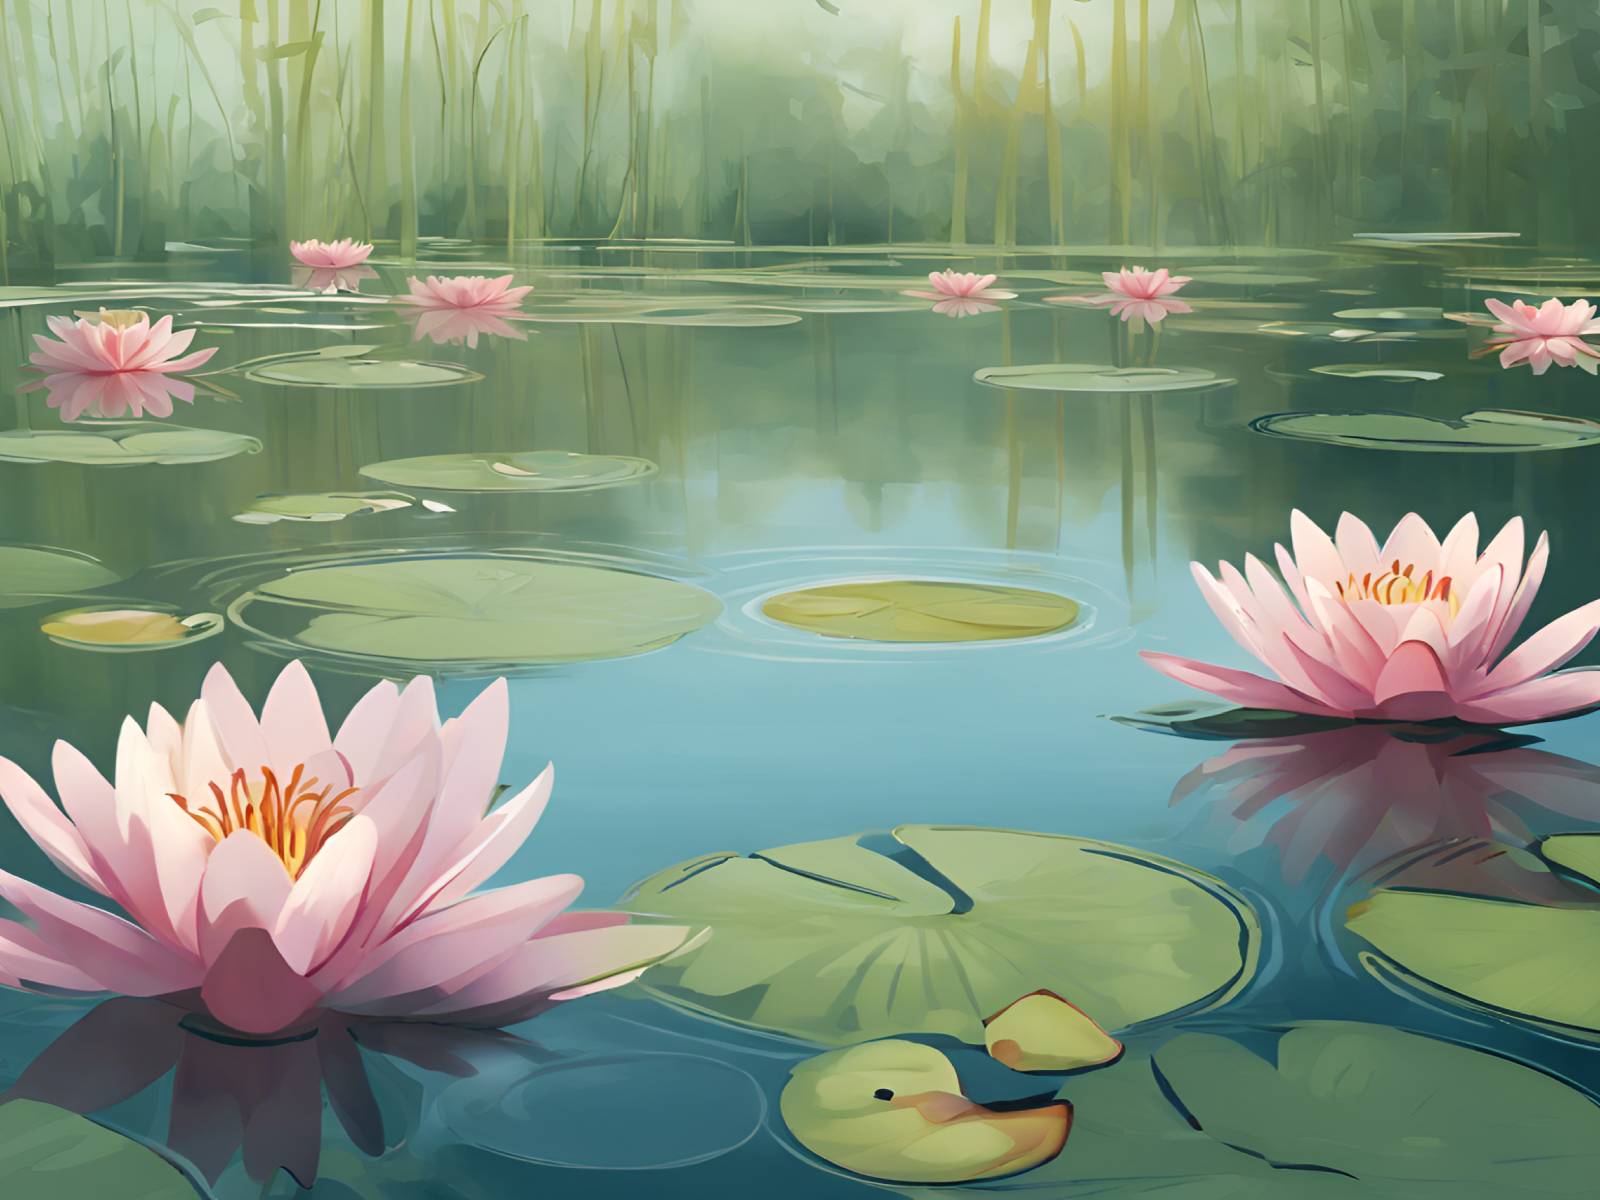 diamanten-wizard-diamond-painting-kits-Nature-Flower-Lily-Pond-Serenity-original.jpg